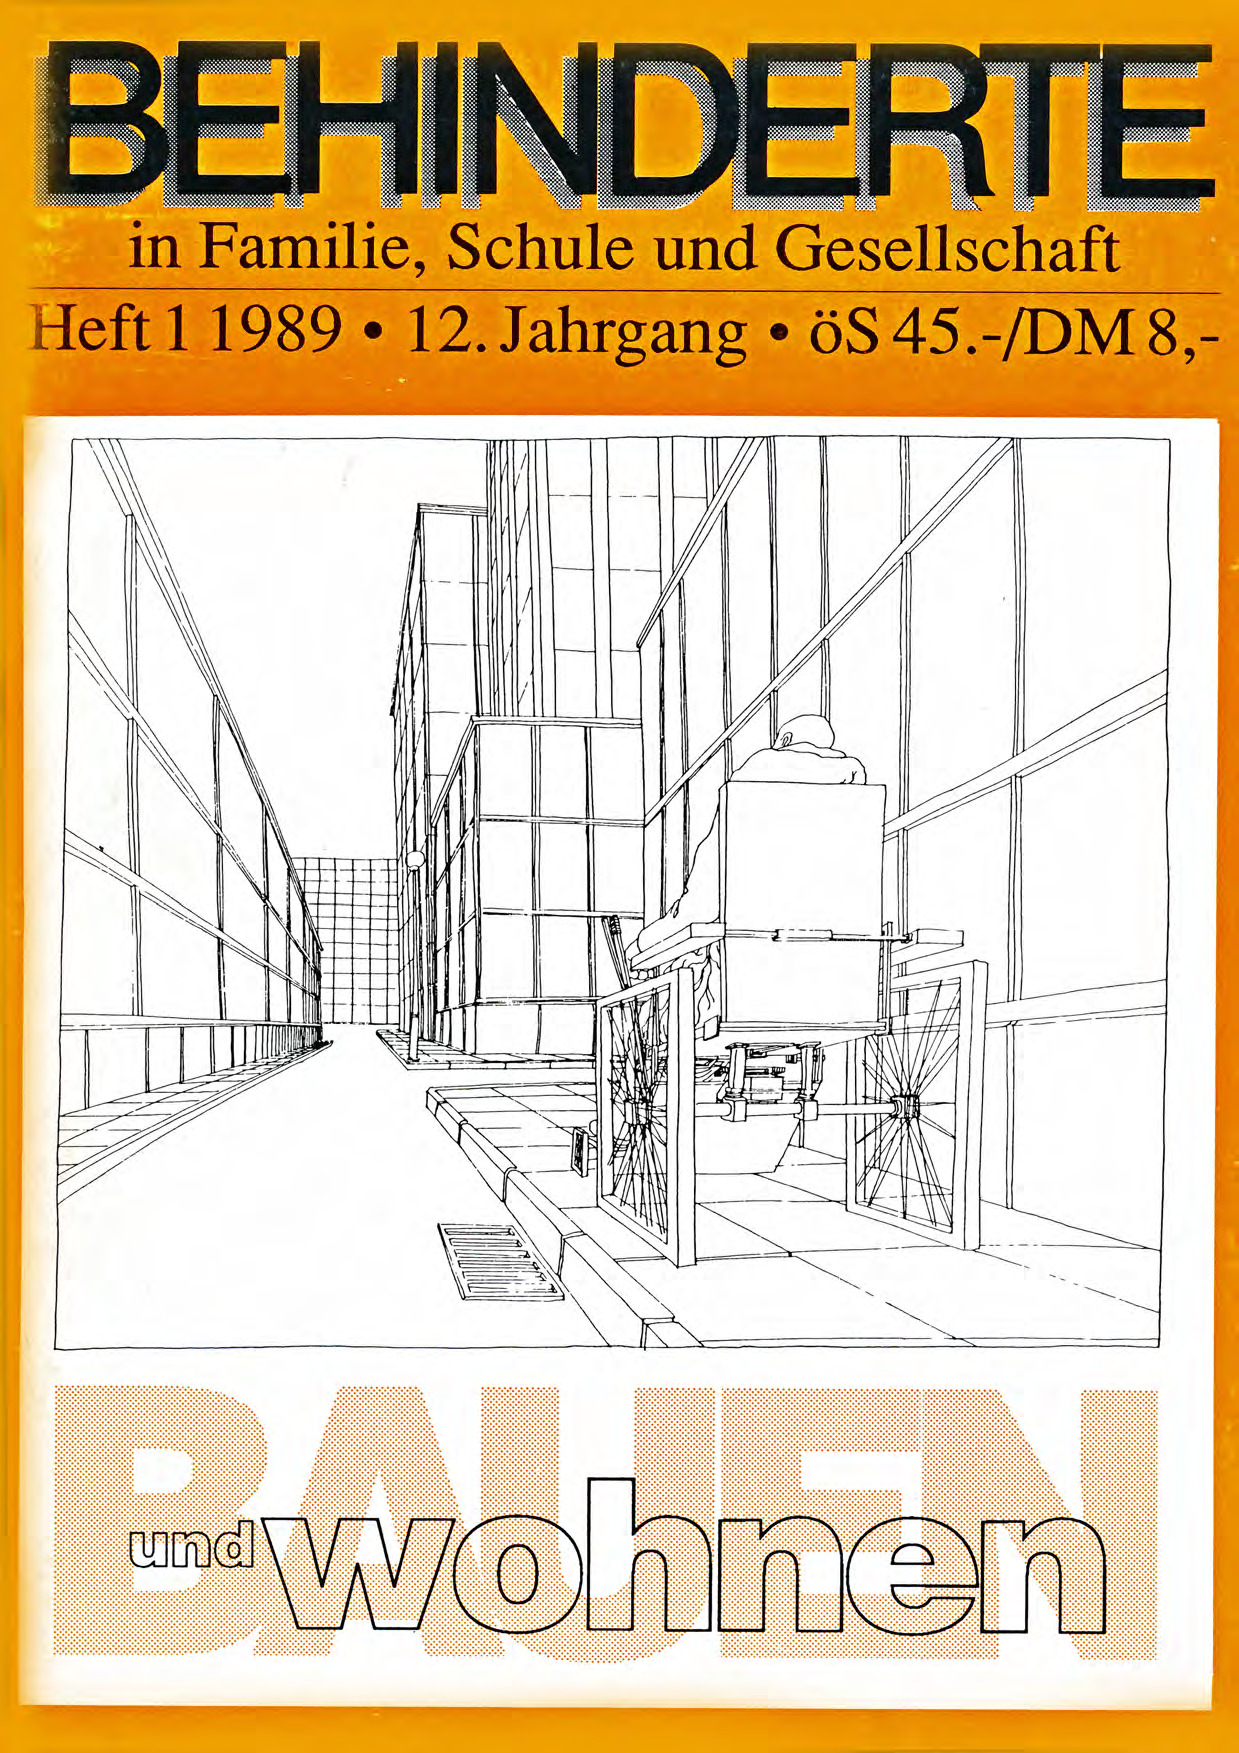 Titelbild der Zeitschrift BEHINDERTE MENSCHEN, Ausgabe 1/1989 "Bauen und Wohnen"